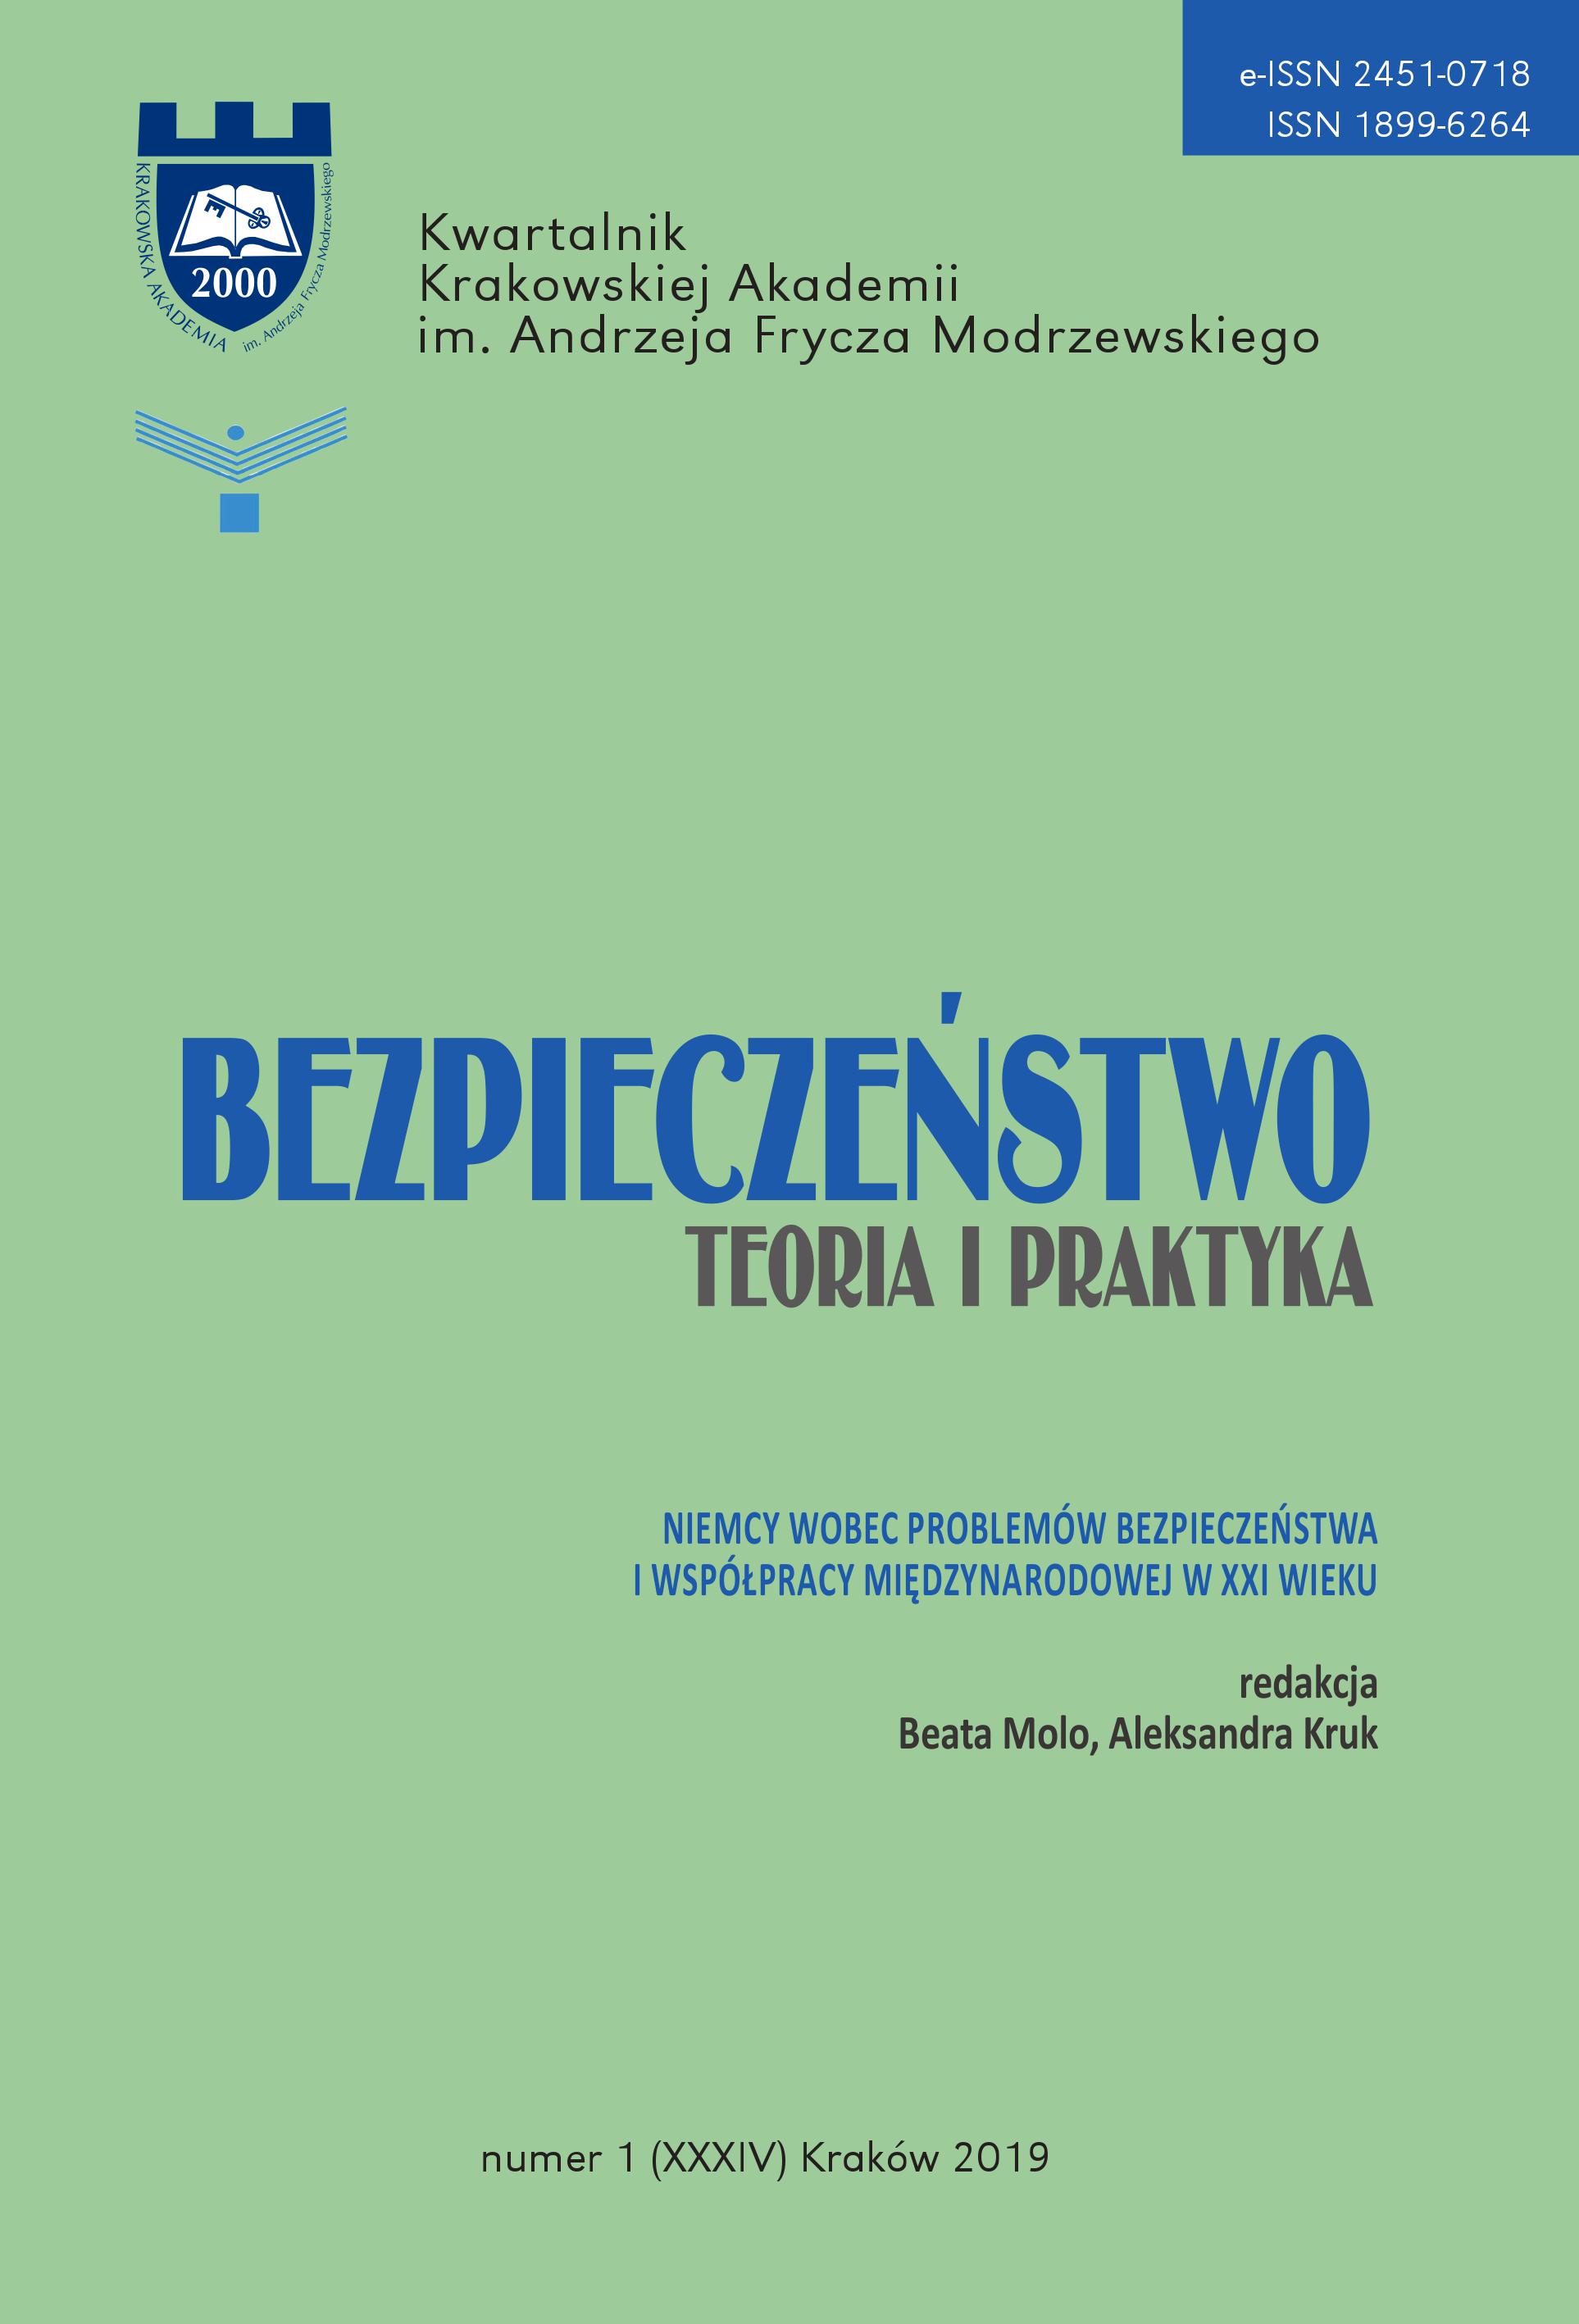 Zaangażowanie Polski w inicjatywy rozbrojeniowe w latach 80. XX wieku – grupa robocza PZPR-SPD i plan Jaruzelskiego